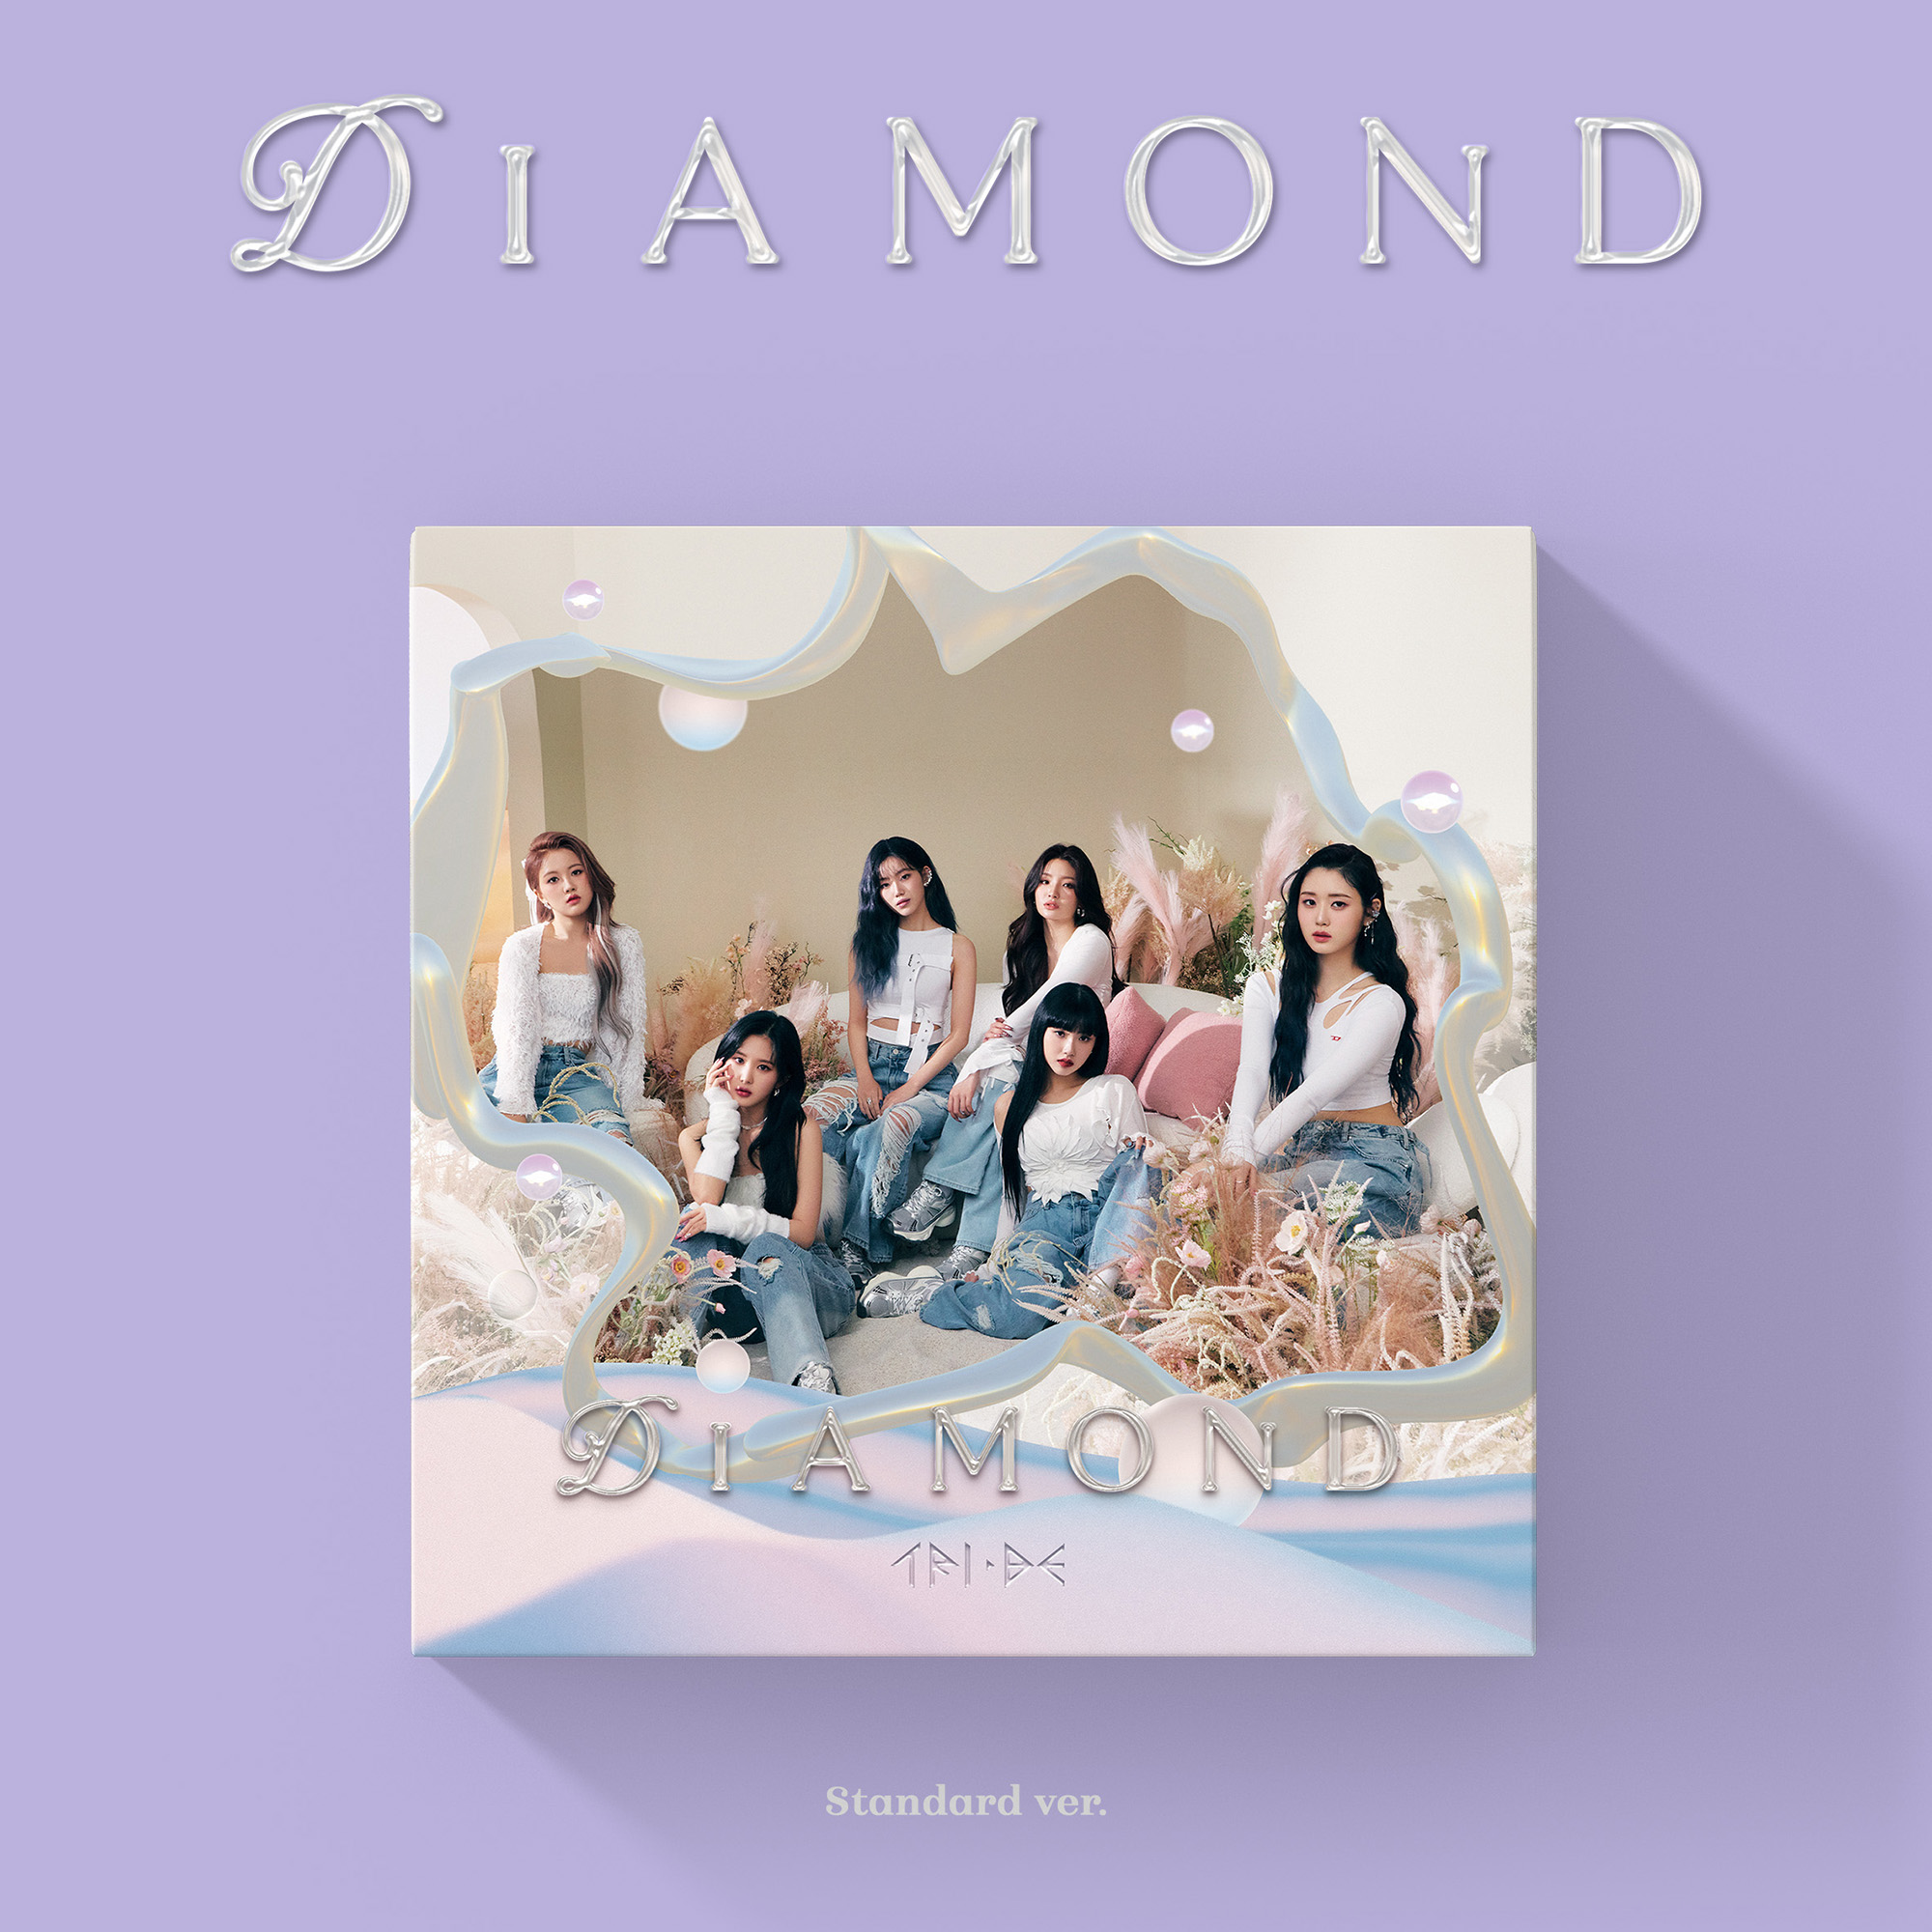 트라이비 (TRI.BE) - 싱글앨범 4집 [Diamond] (일반반)케이팝스토어(kpop store)